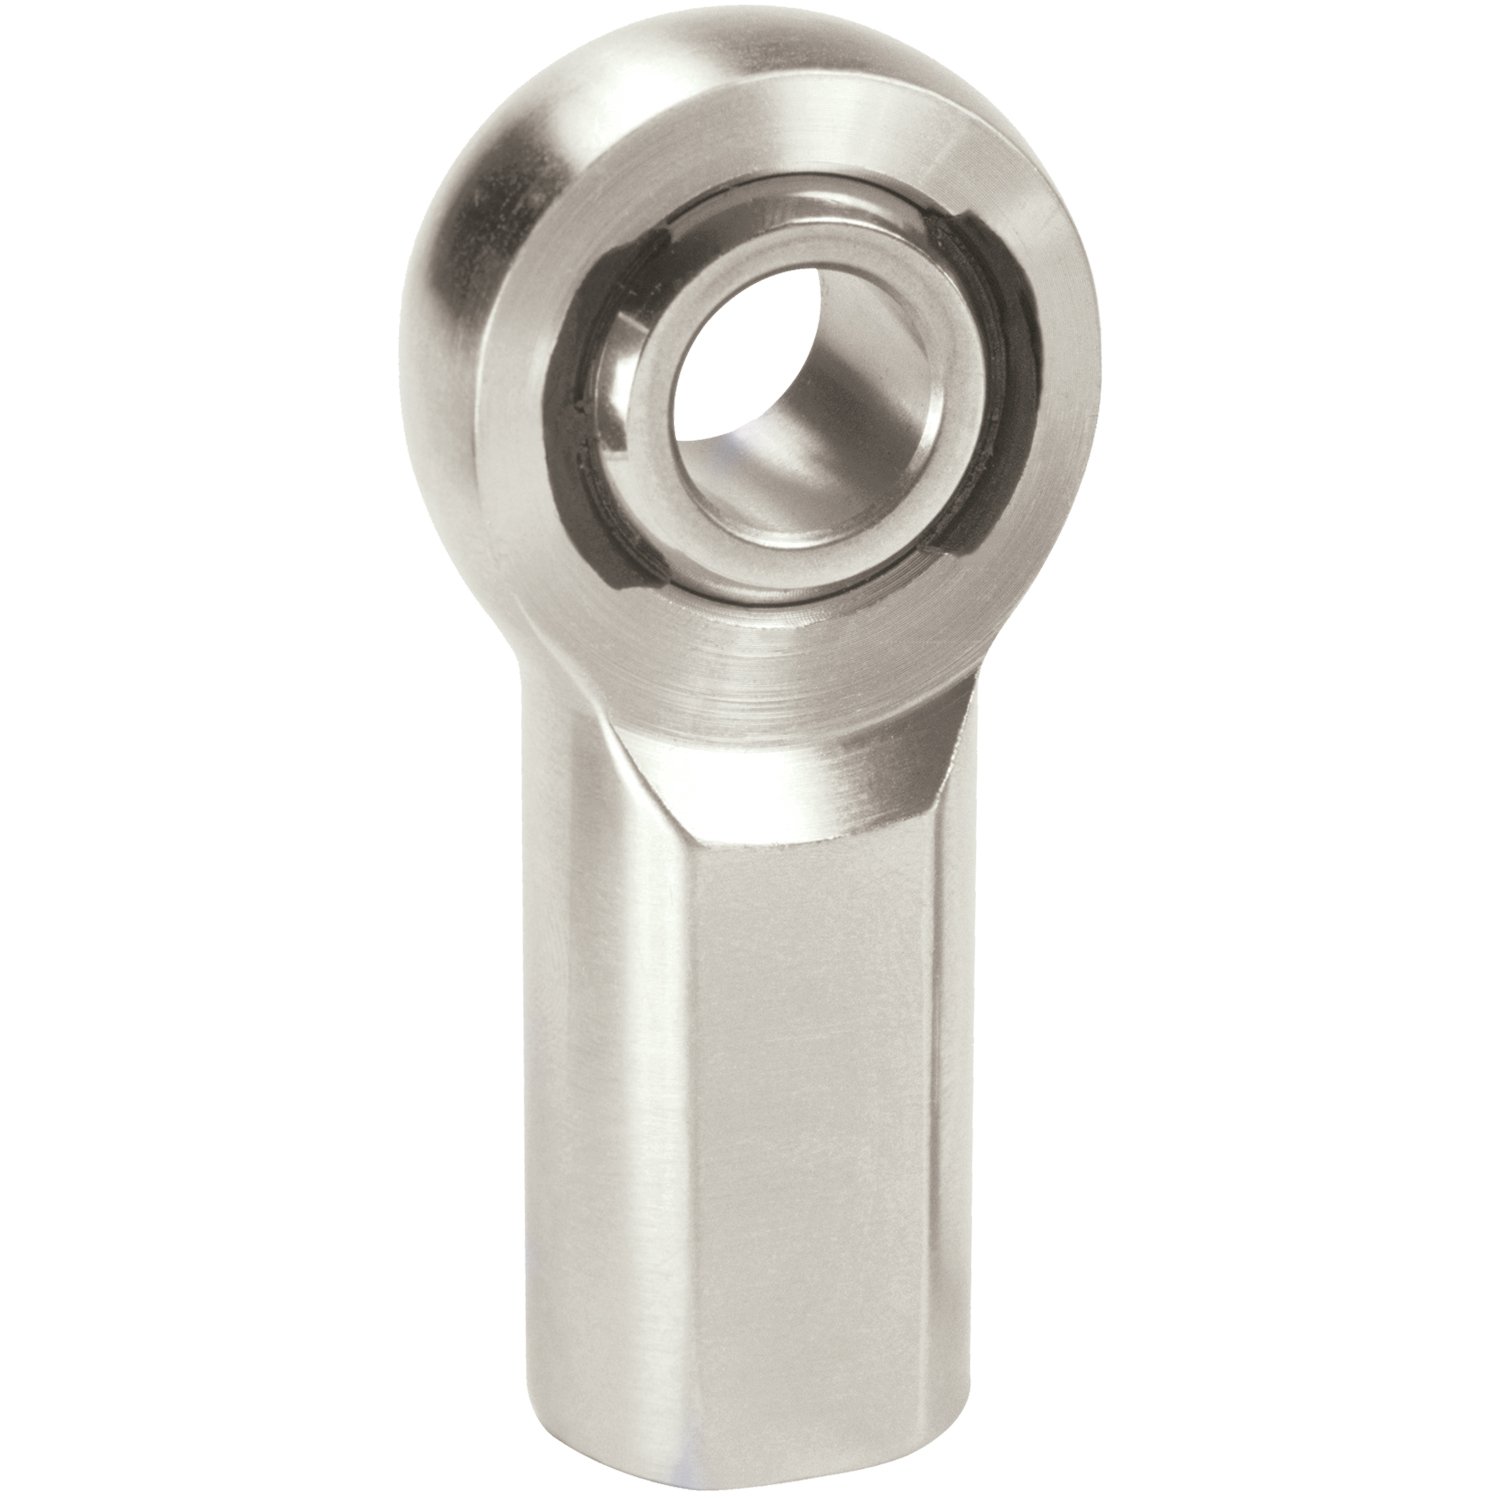 XF Chromoly Steel Series Rod End Hole I.D.: .7500"